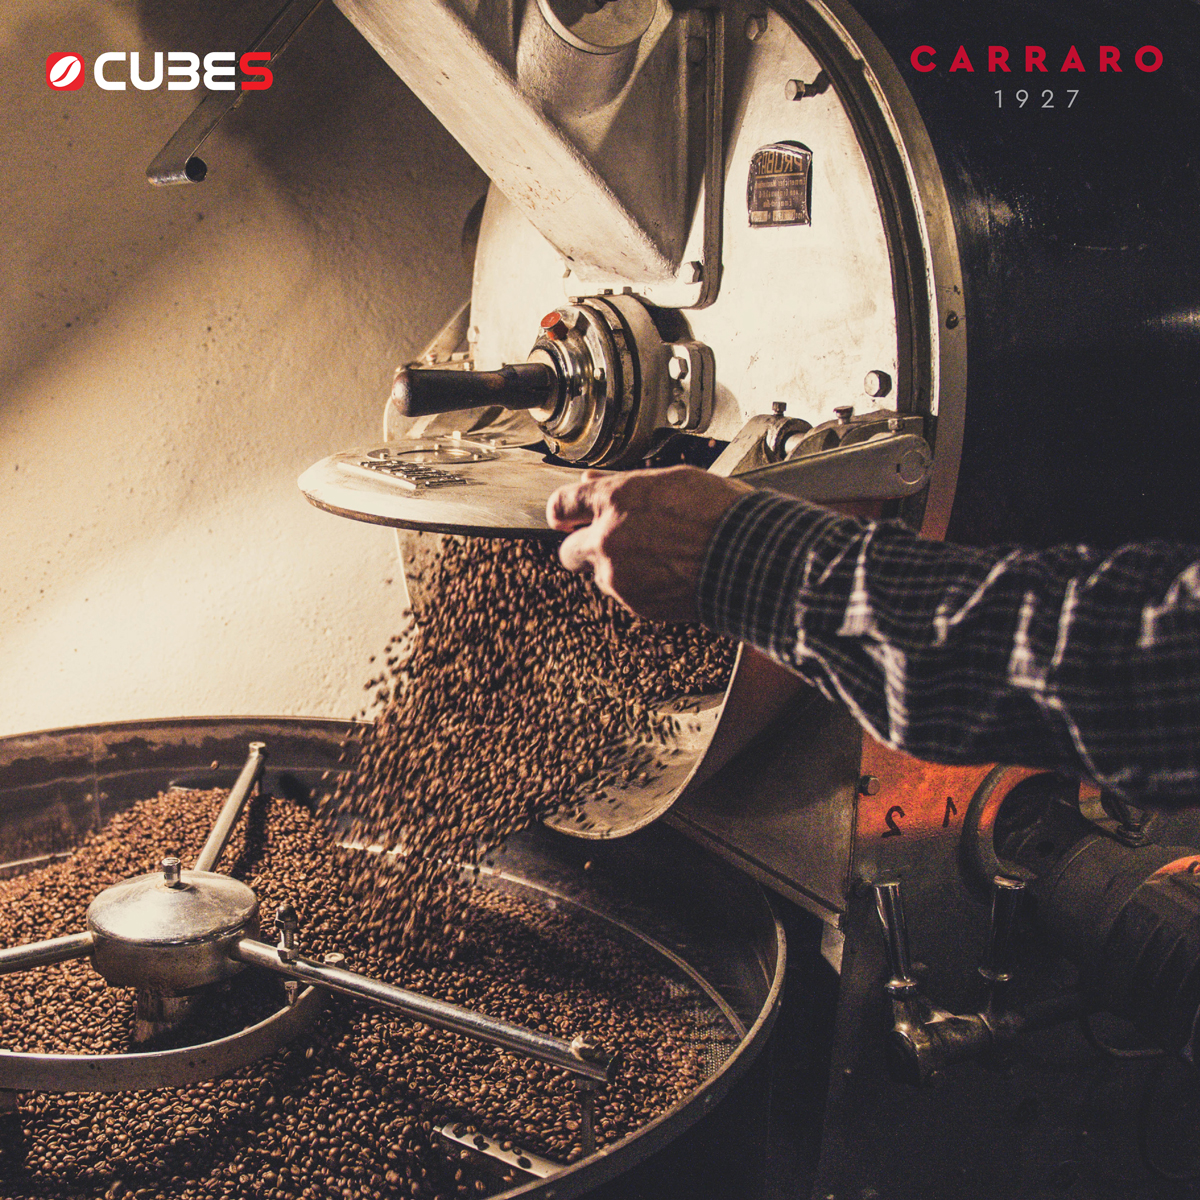 Cà phê hạt Carraro Globo Rosso Vị đậm đà từ quả phỉ và vị sô cô la dịu nhẹ - Hàng nhập khẩu từ Ý